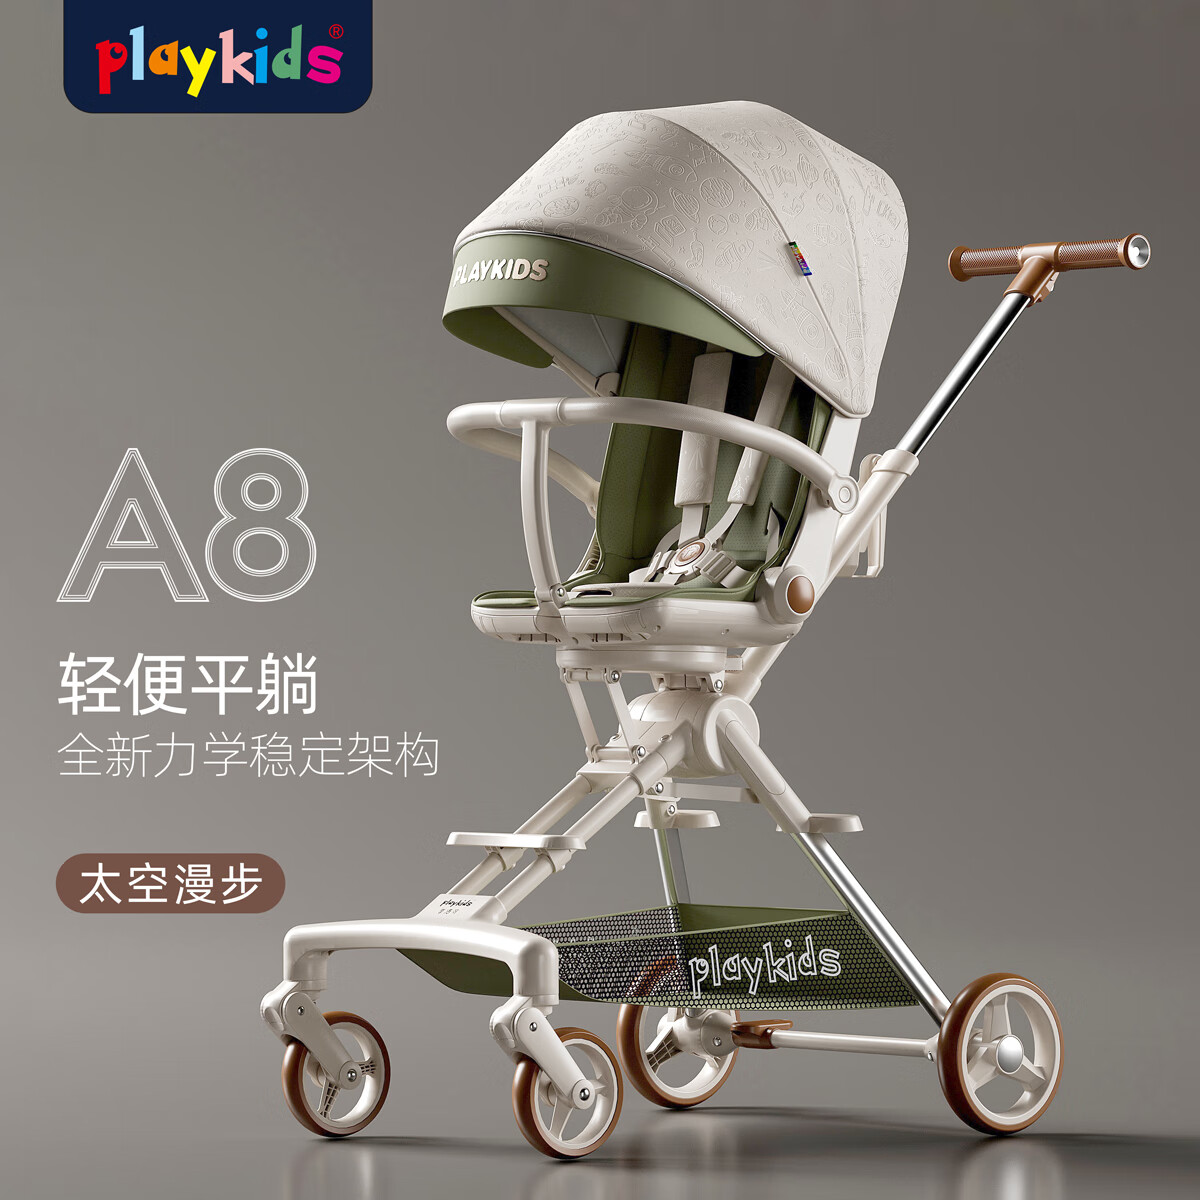 playkids 普洛可 A8遛娃神器可坐可躺双向推行婴幼儿推车便携可折叠溜娃车 太